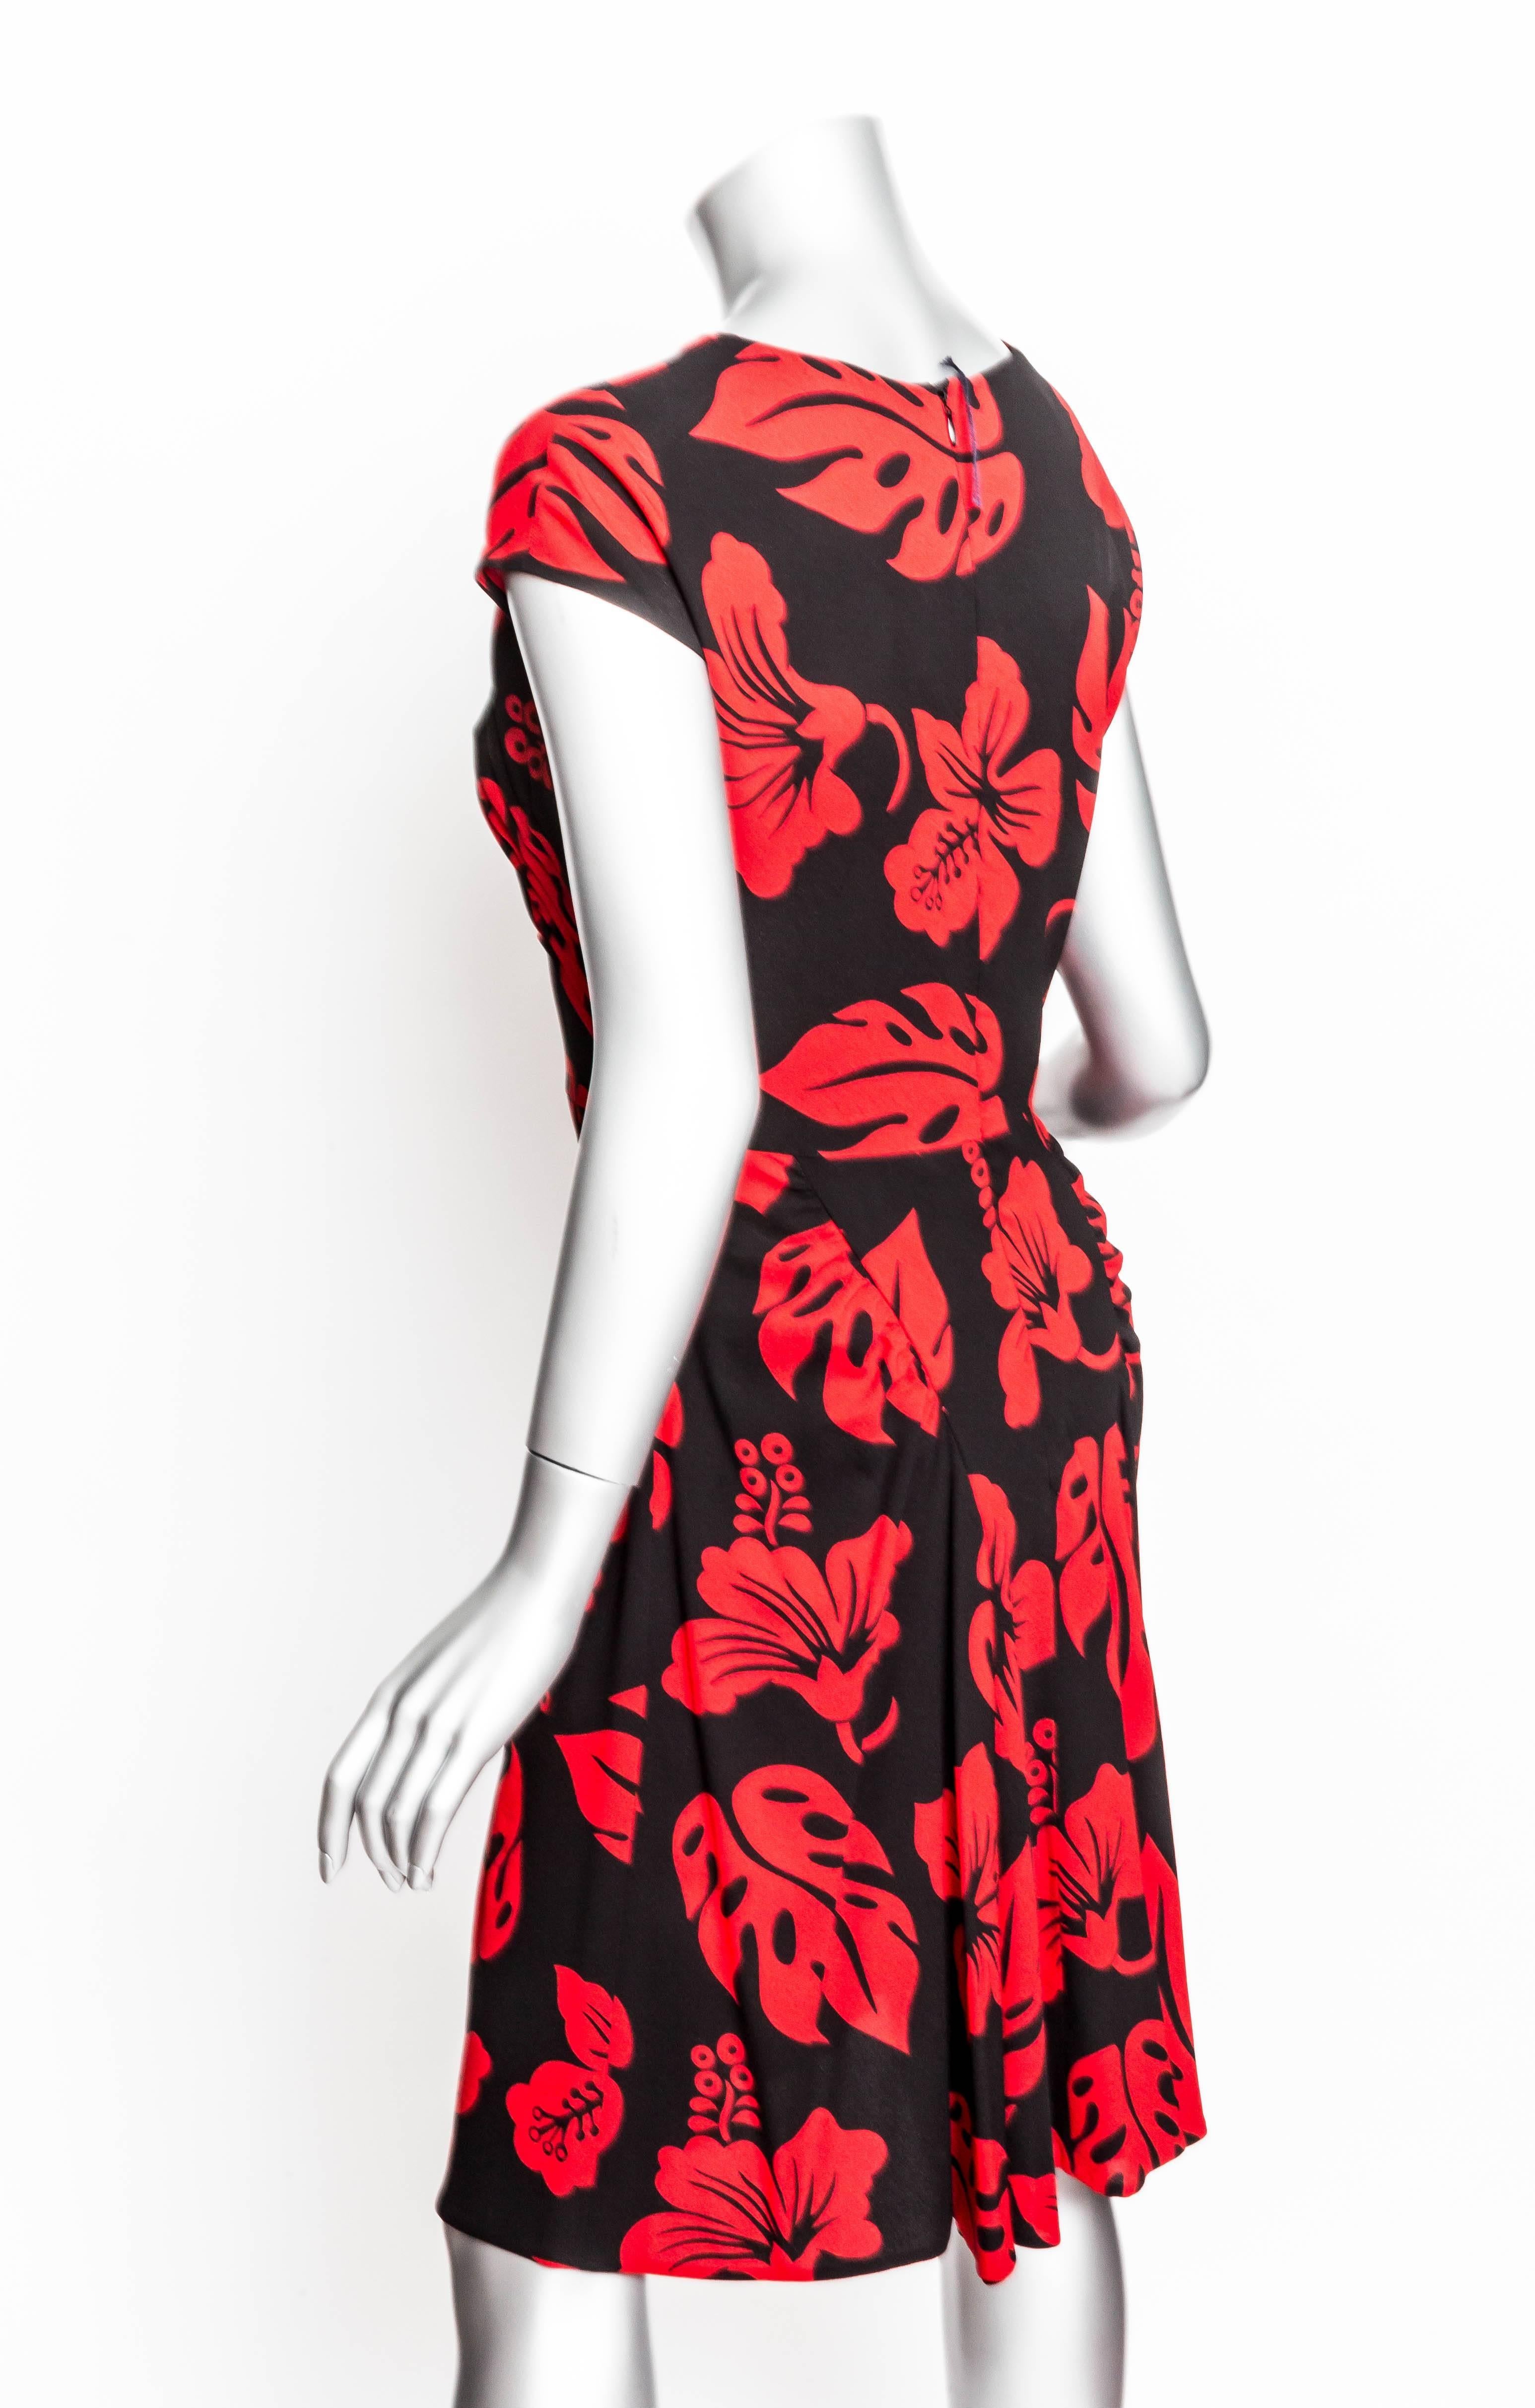 Prada Red and Black Print Dress - 44 1